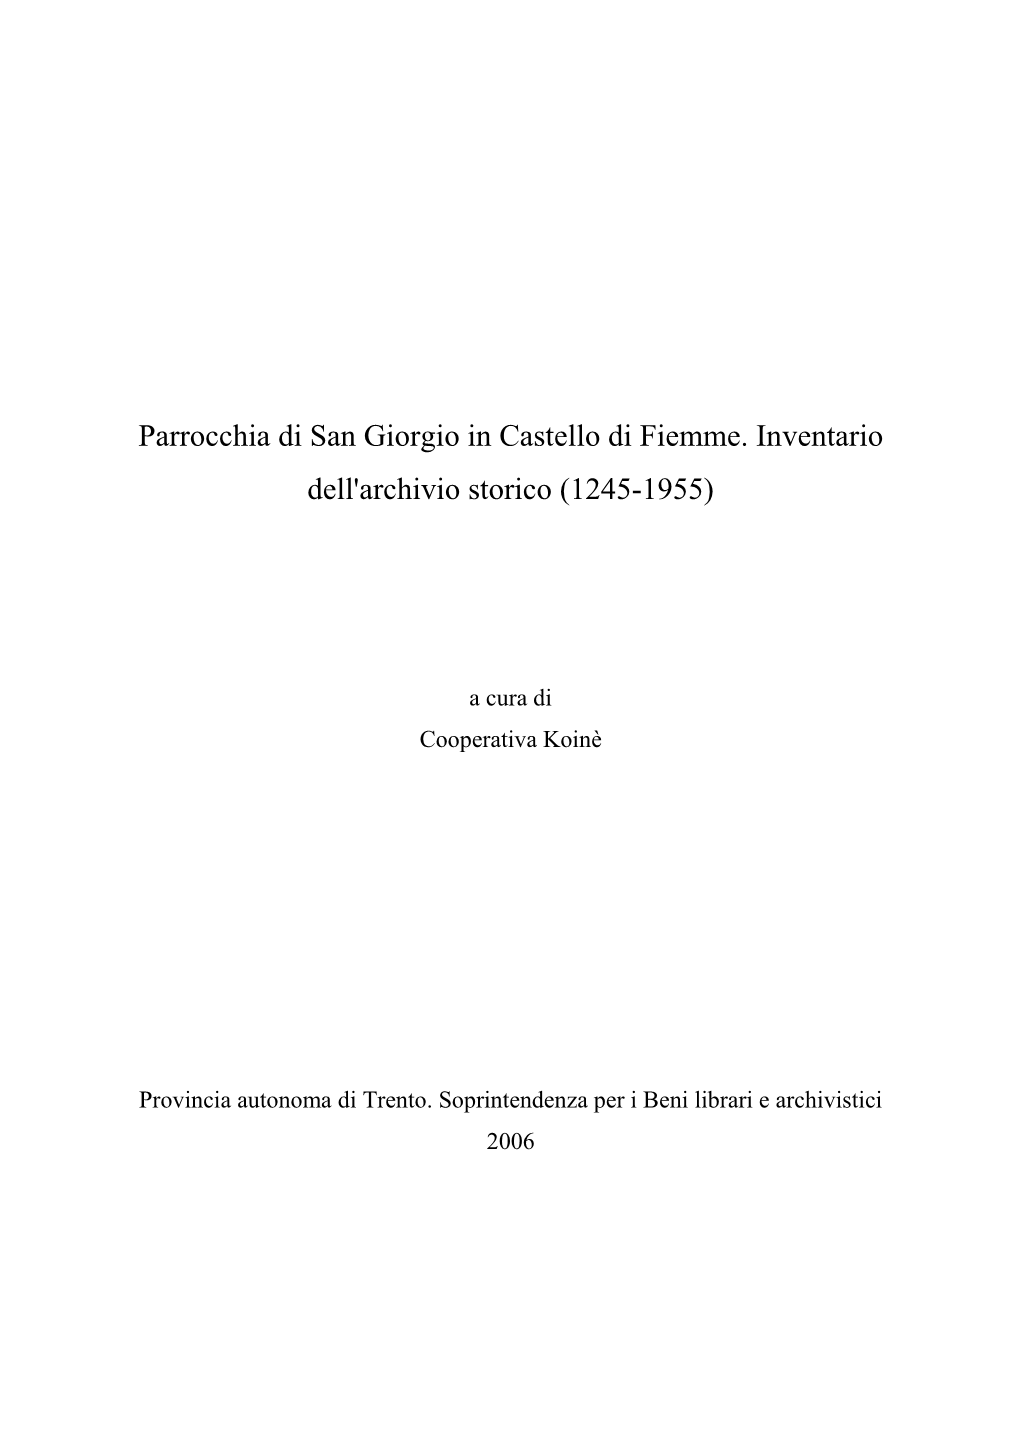 Parrocchia Di San Giorgio in Castello Di Fiemme. Inventari…